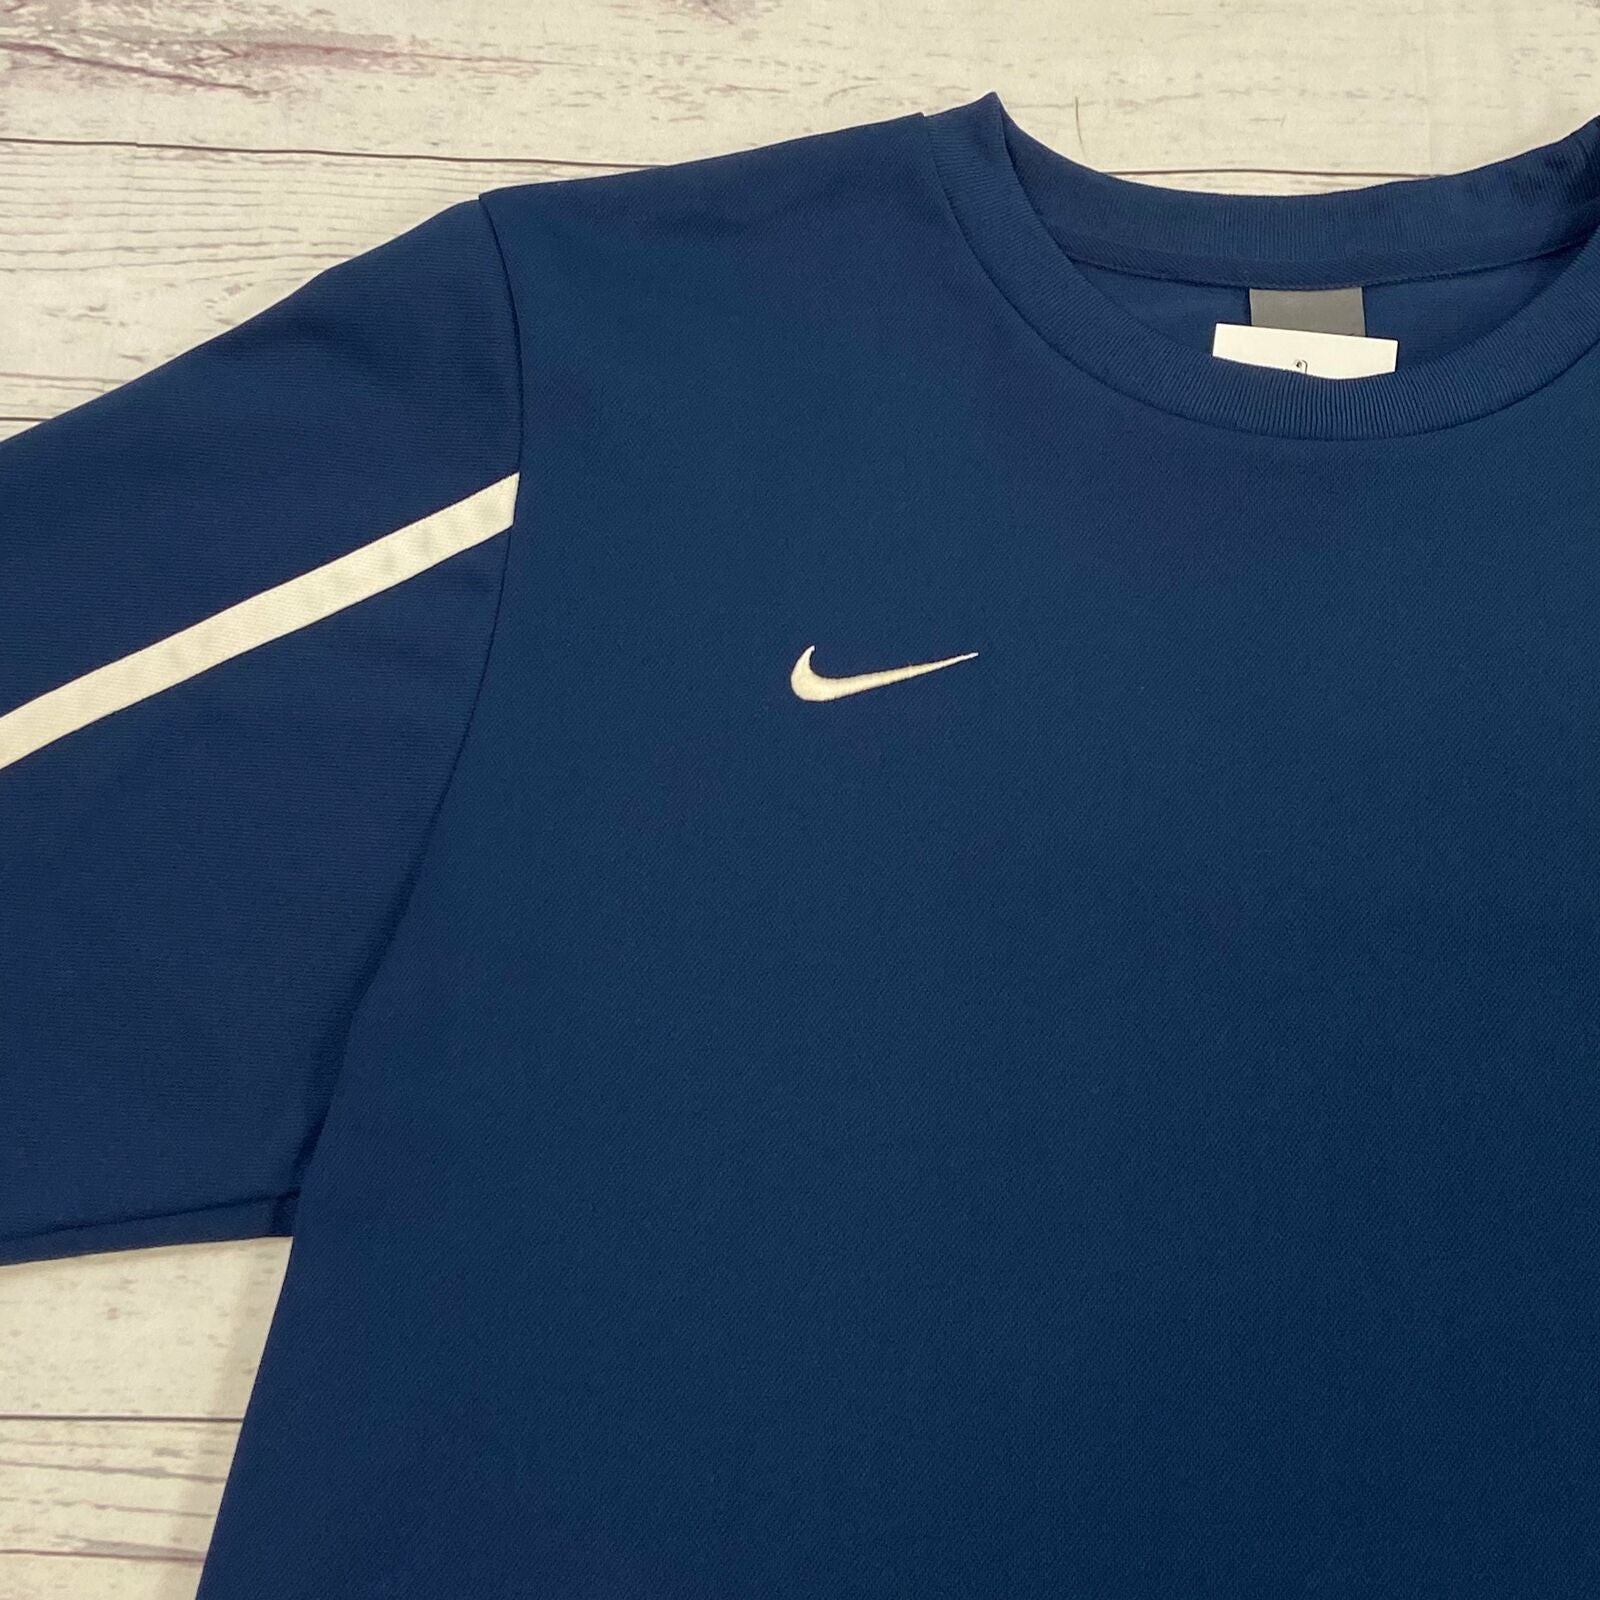 Vintage Nike Blue Athletic Short Sleeve T-Shirt Men Size L - beyond exchange